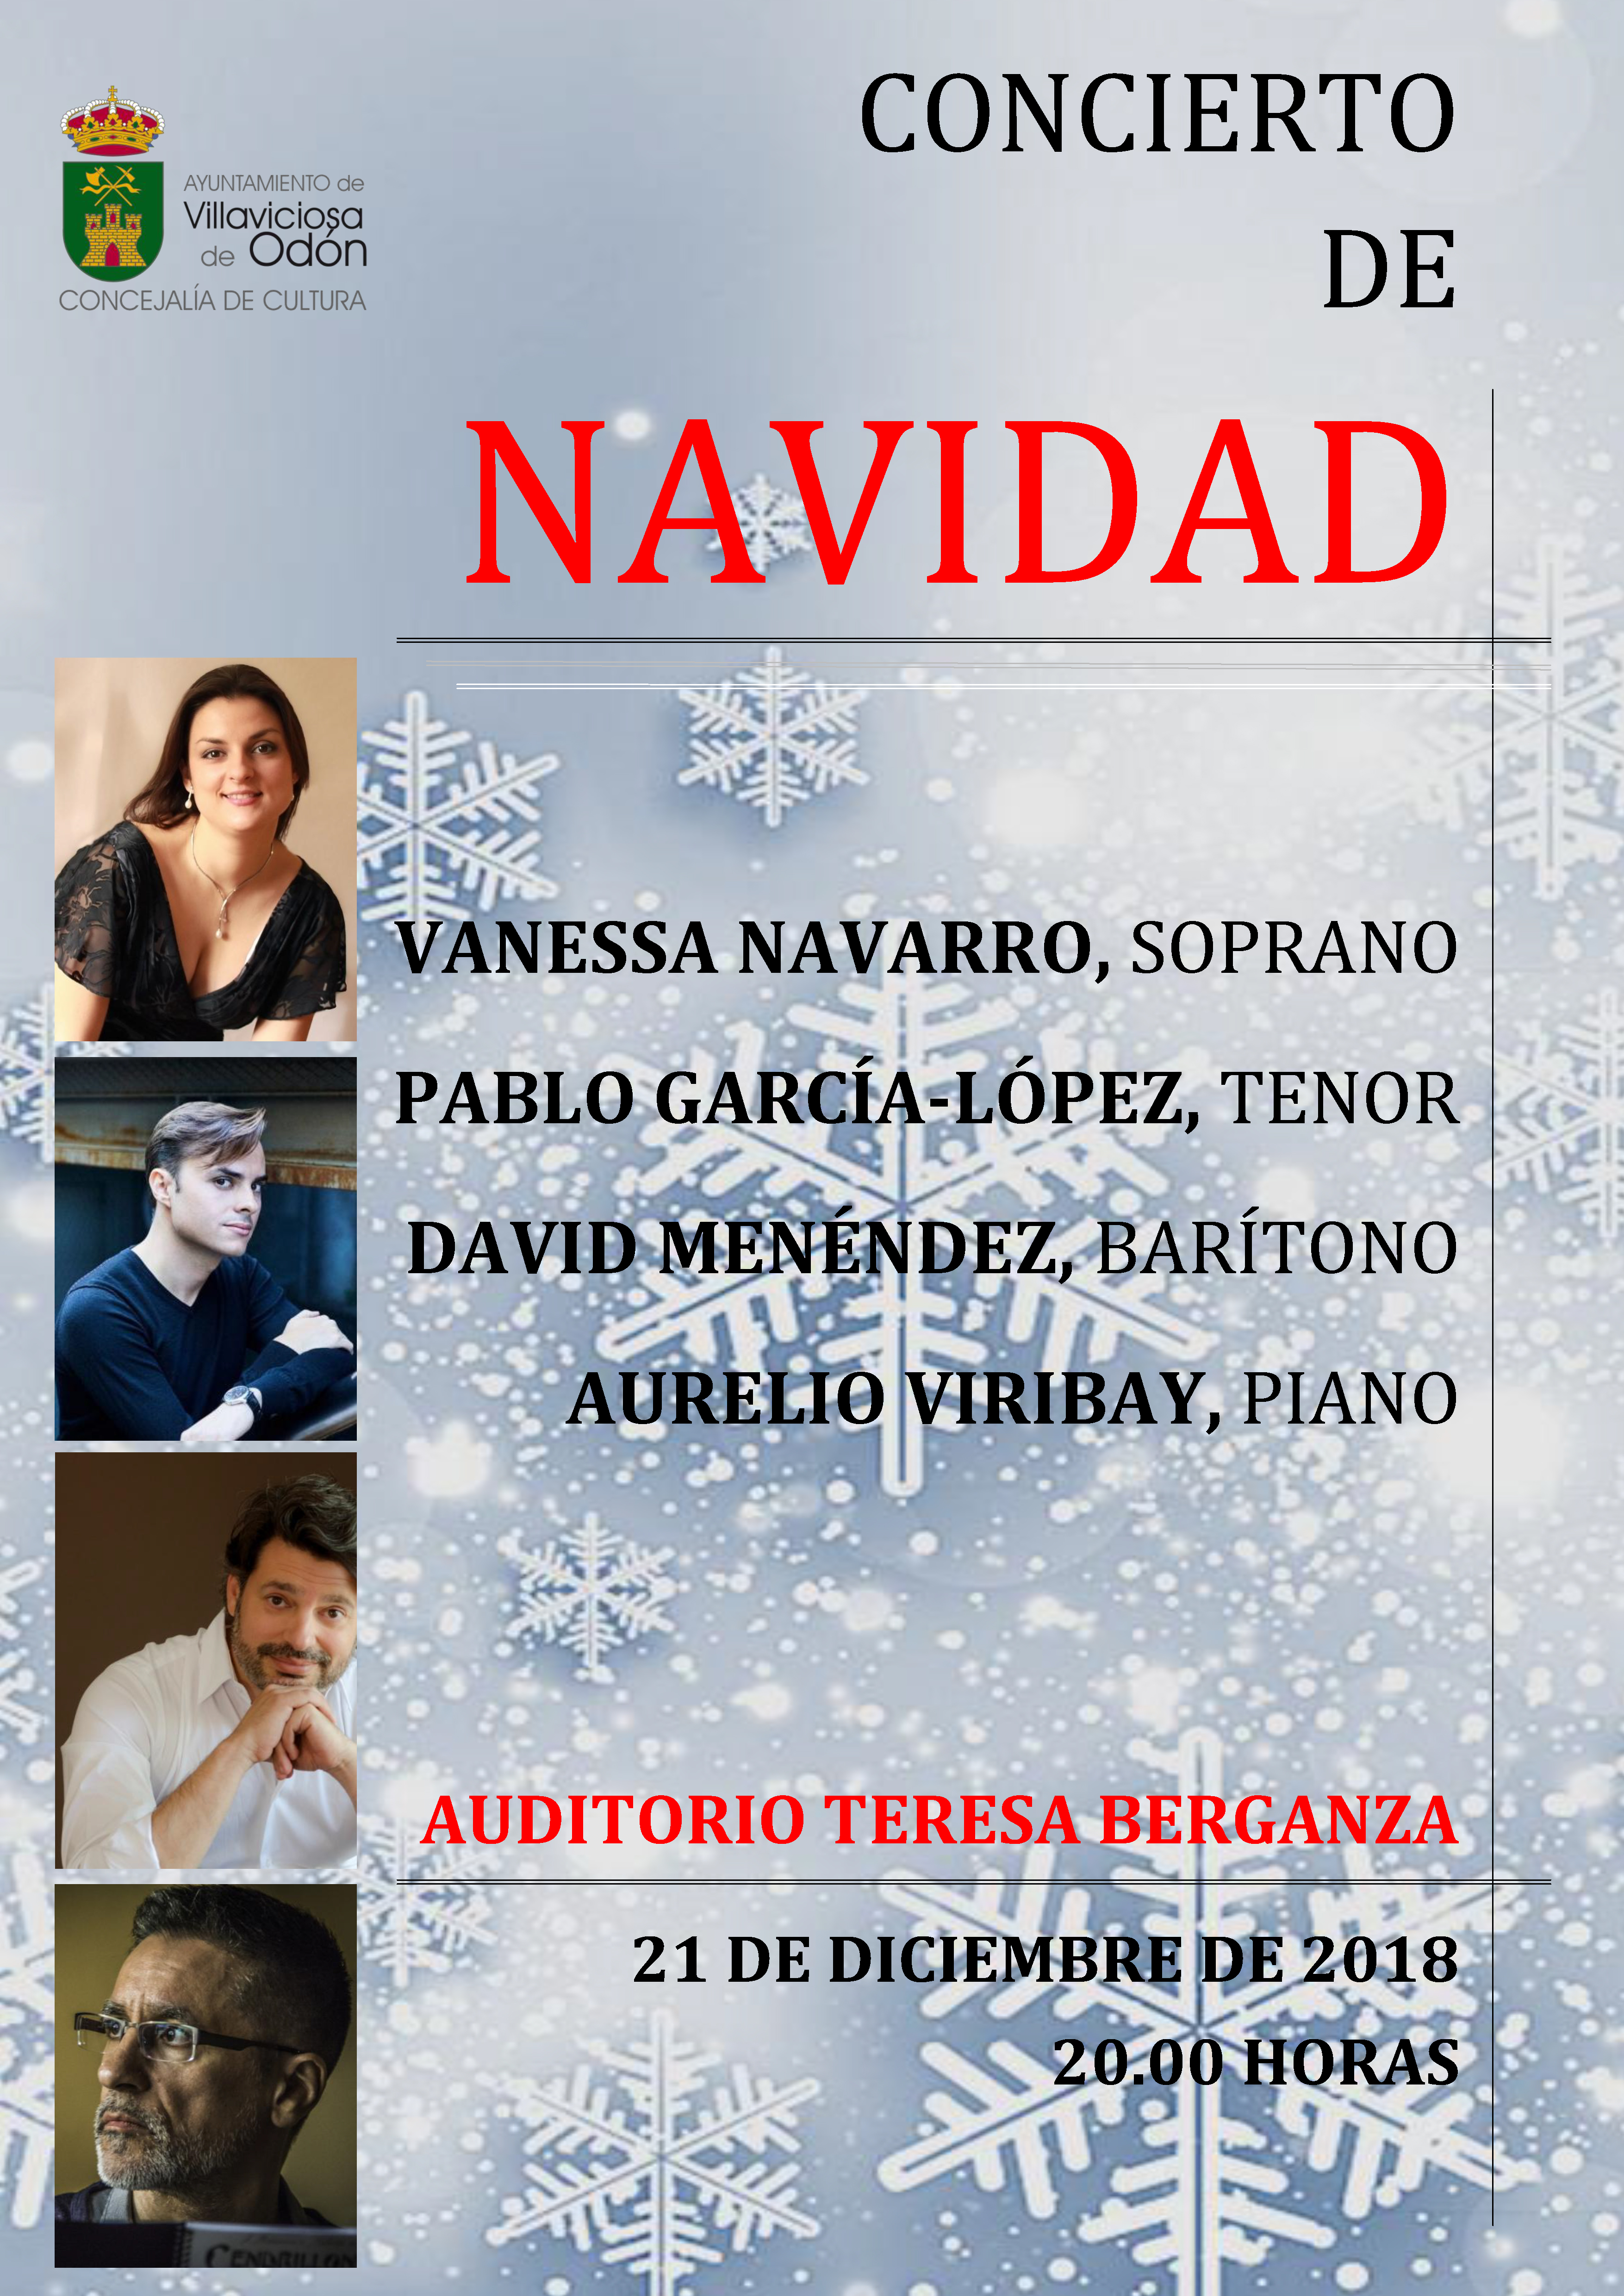 Auditorio Teresa Berganza: Concierto de Navidad.